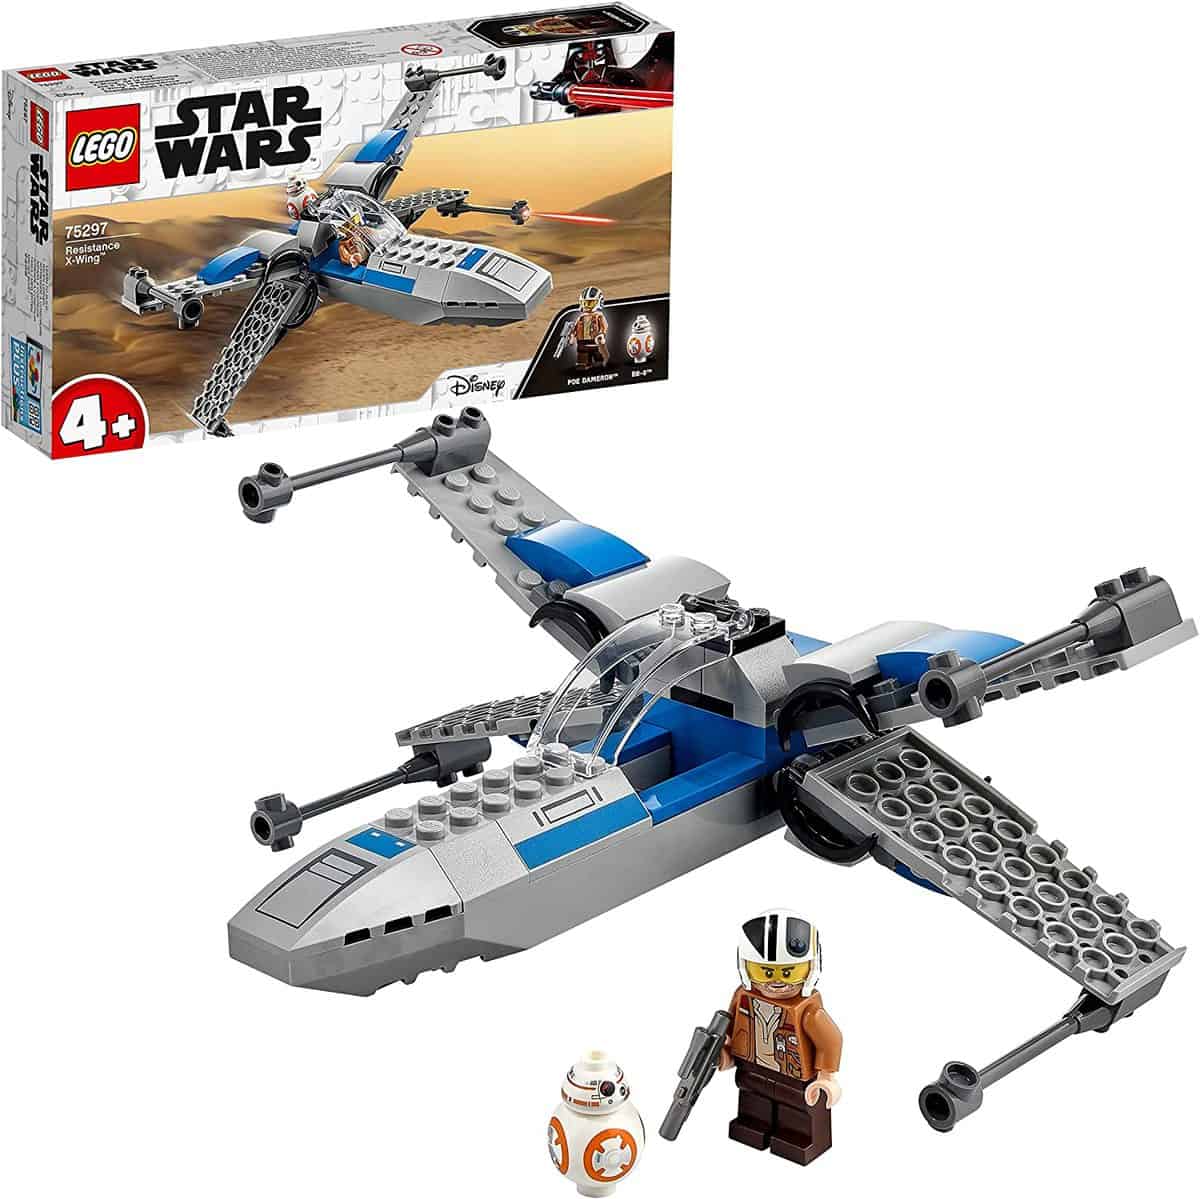 LEGO 75297 Star Wars Resistance X-Wing - für 13,99 € [Prime] statt 17,94 €